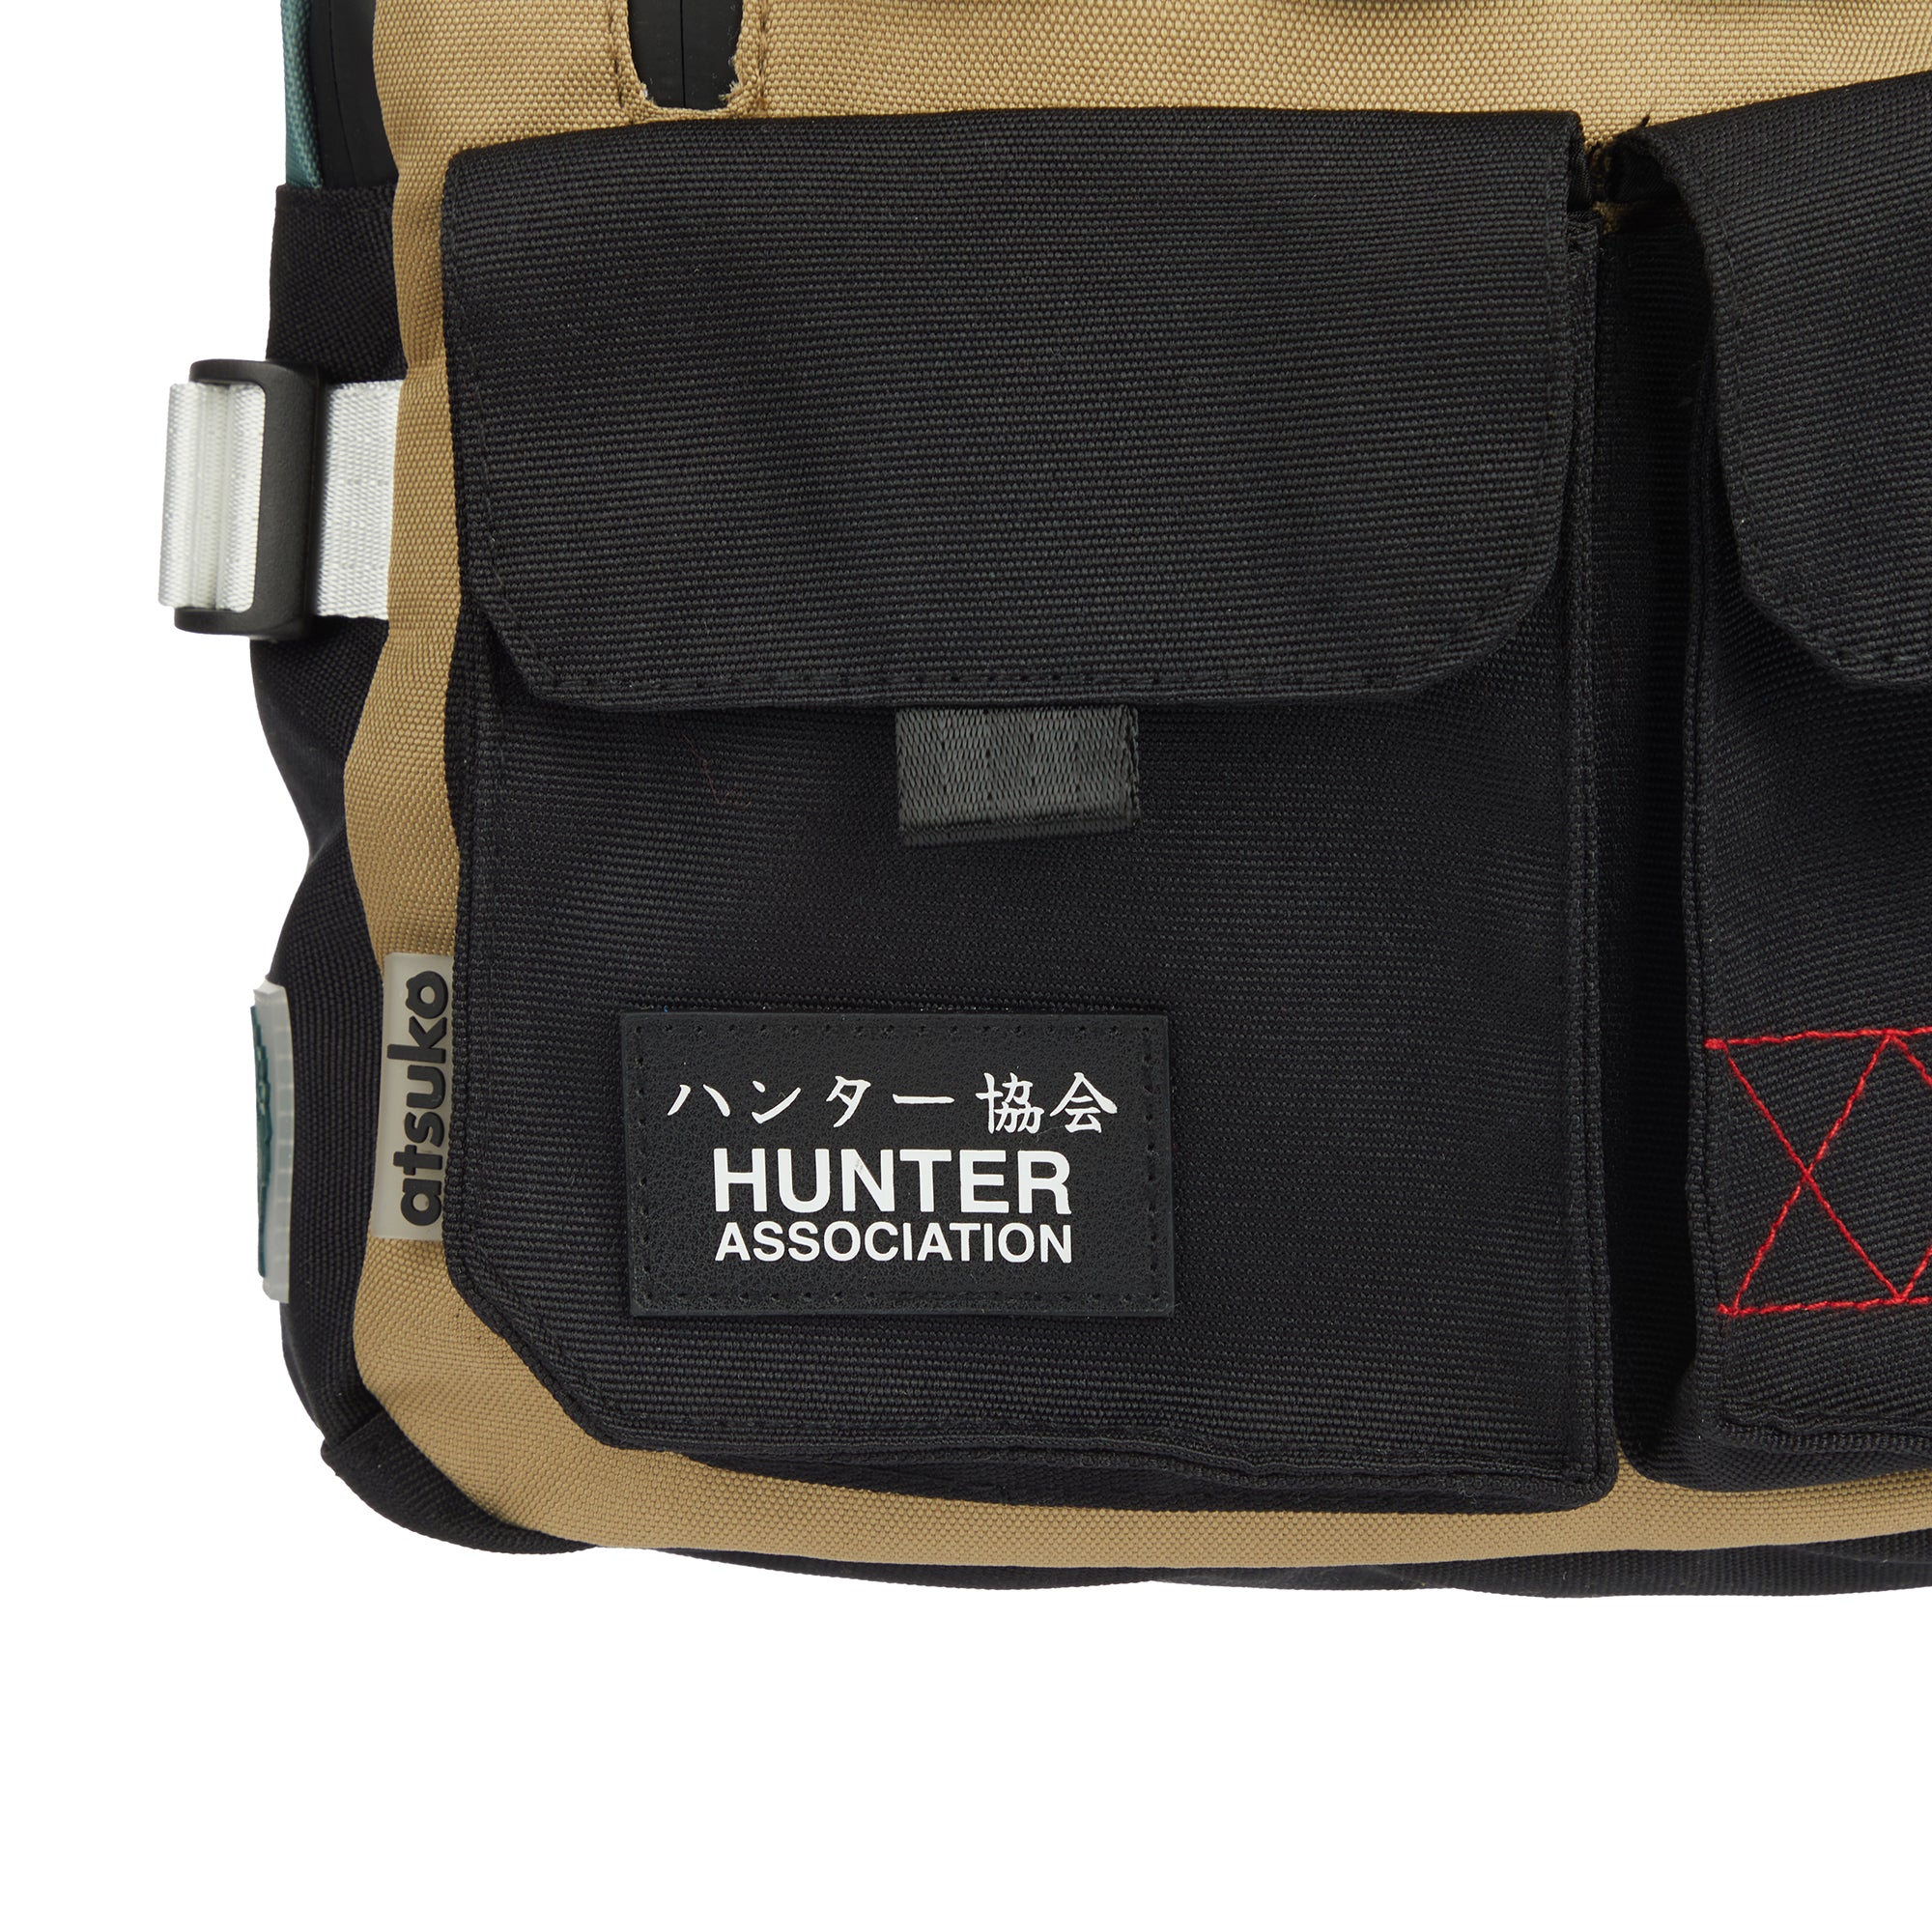 Hunter Association Sling Bag